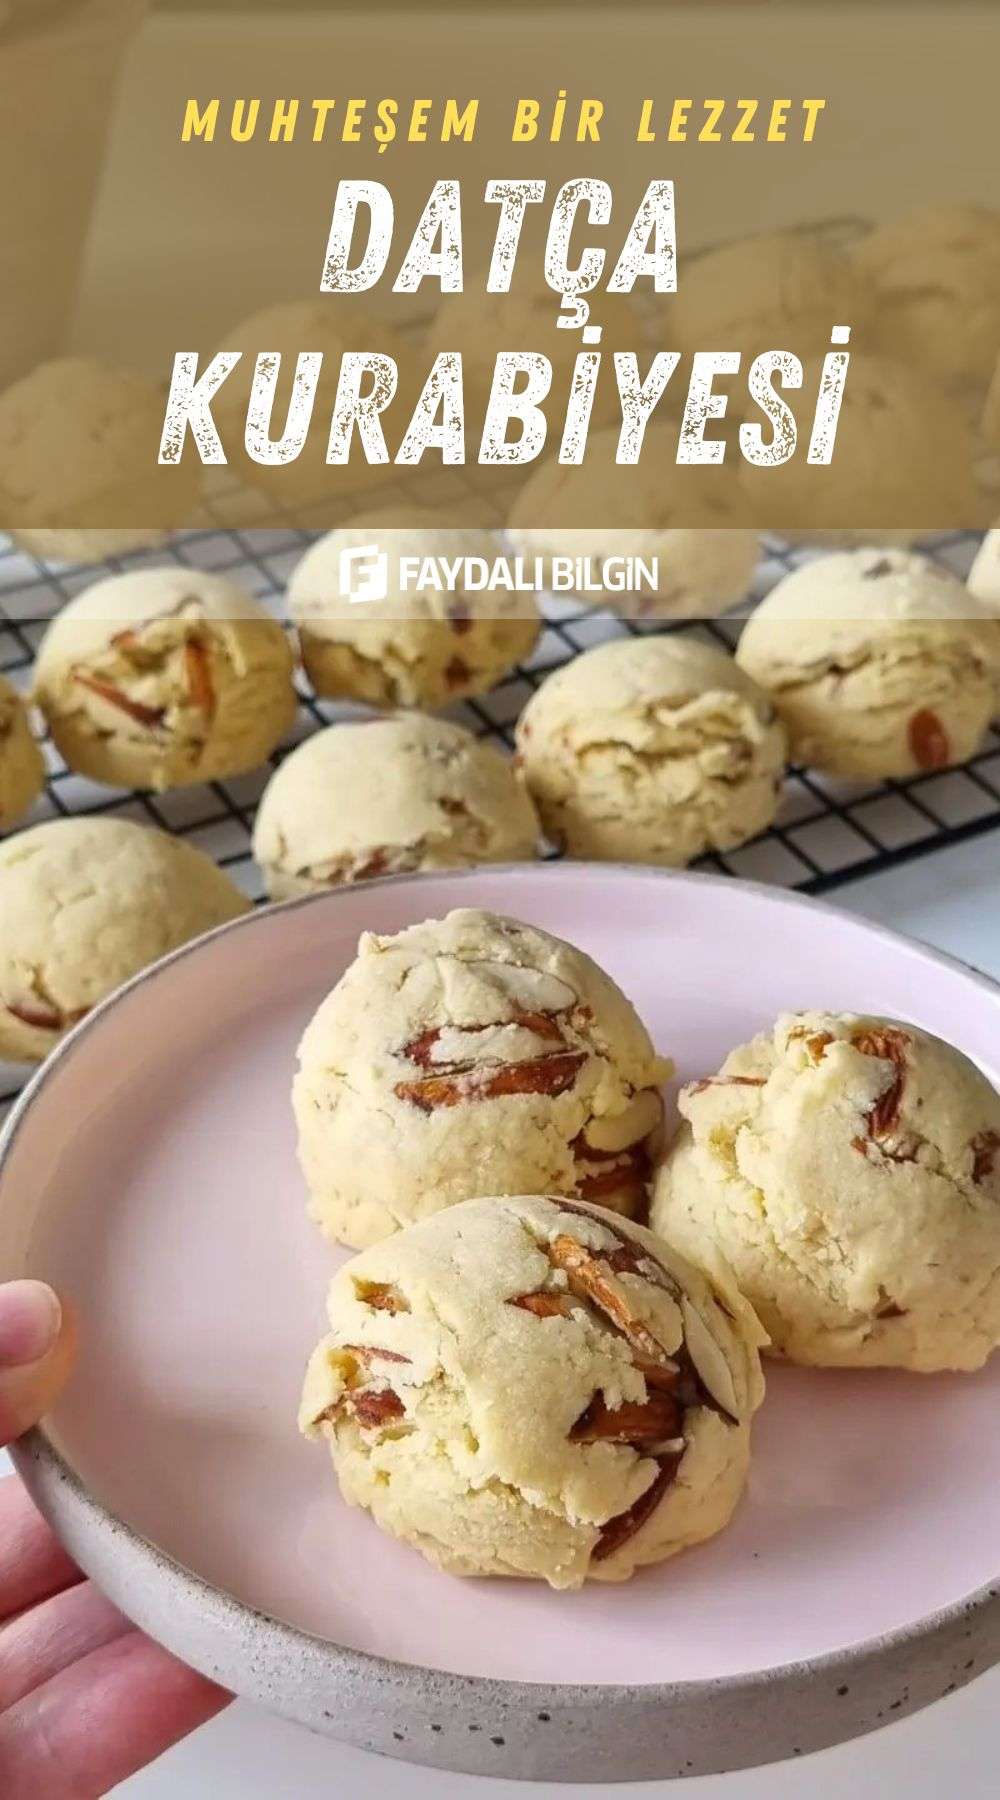 bademli kurabiye seviyorsanız birde datça kurabiyesini deneyin!